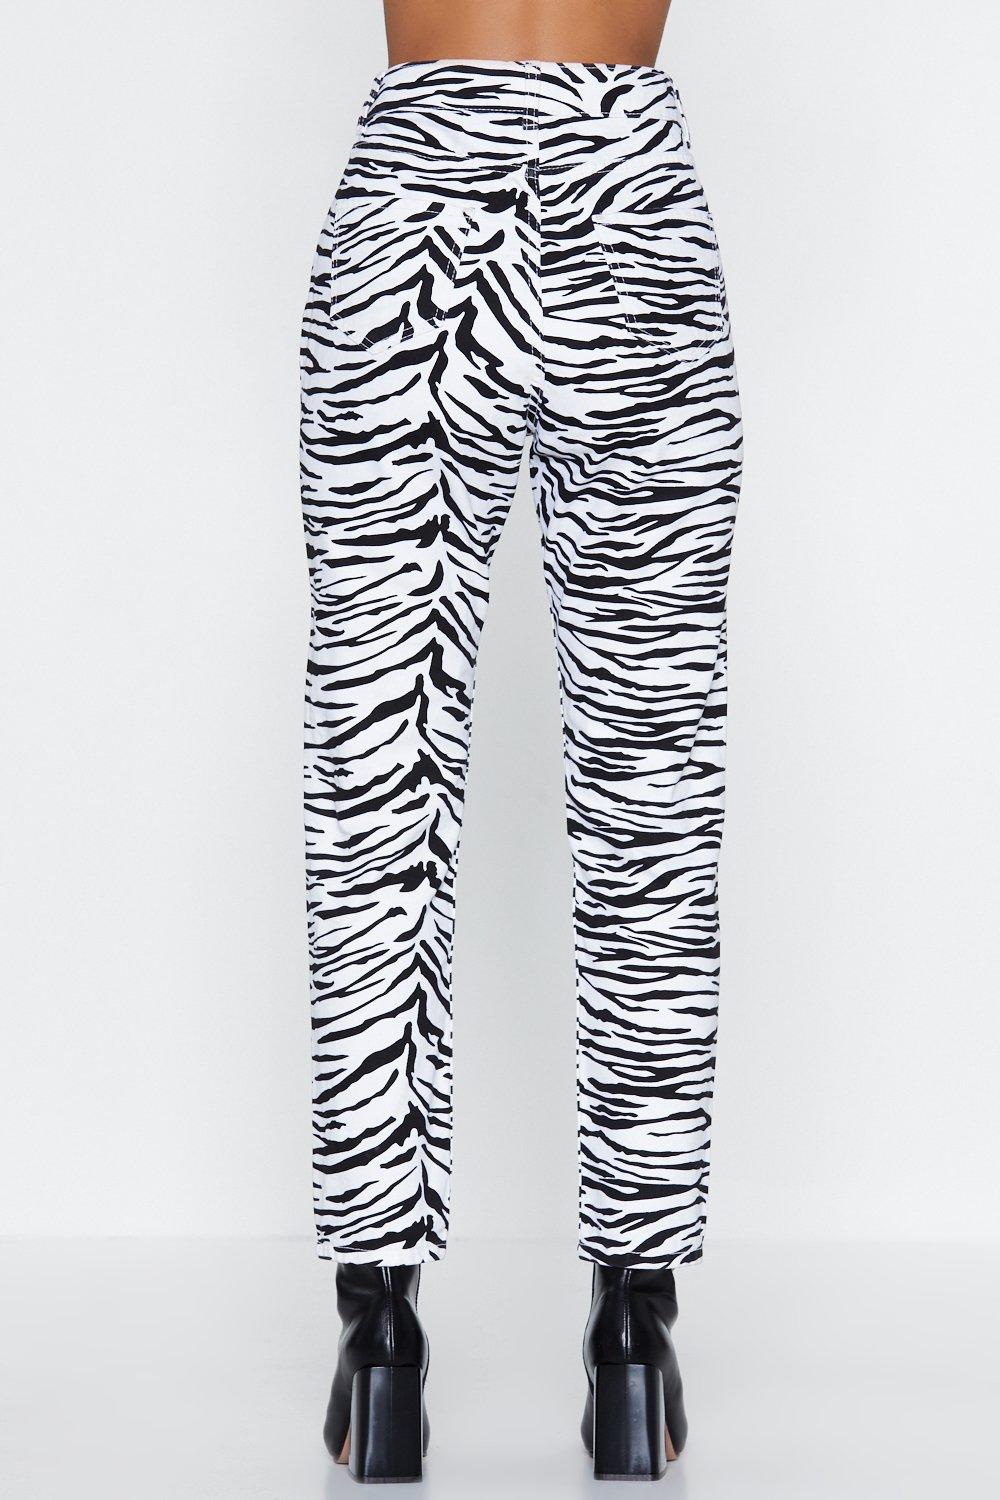 zebra jeans